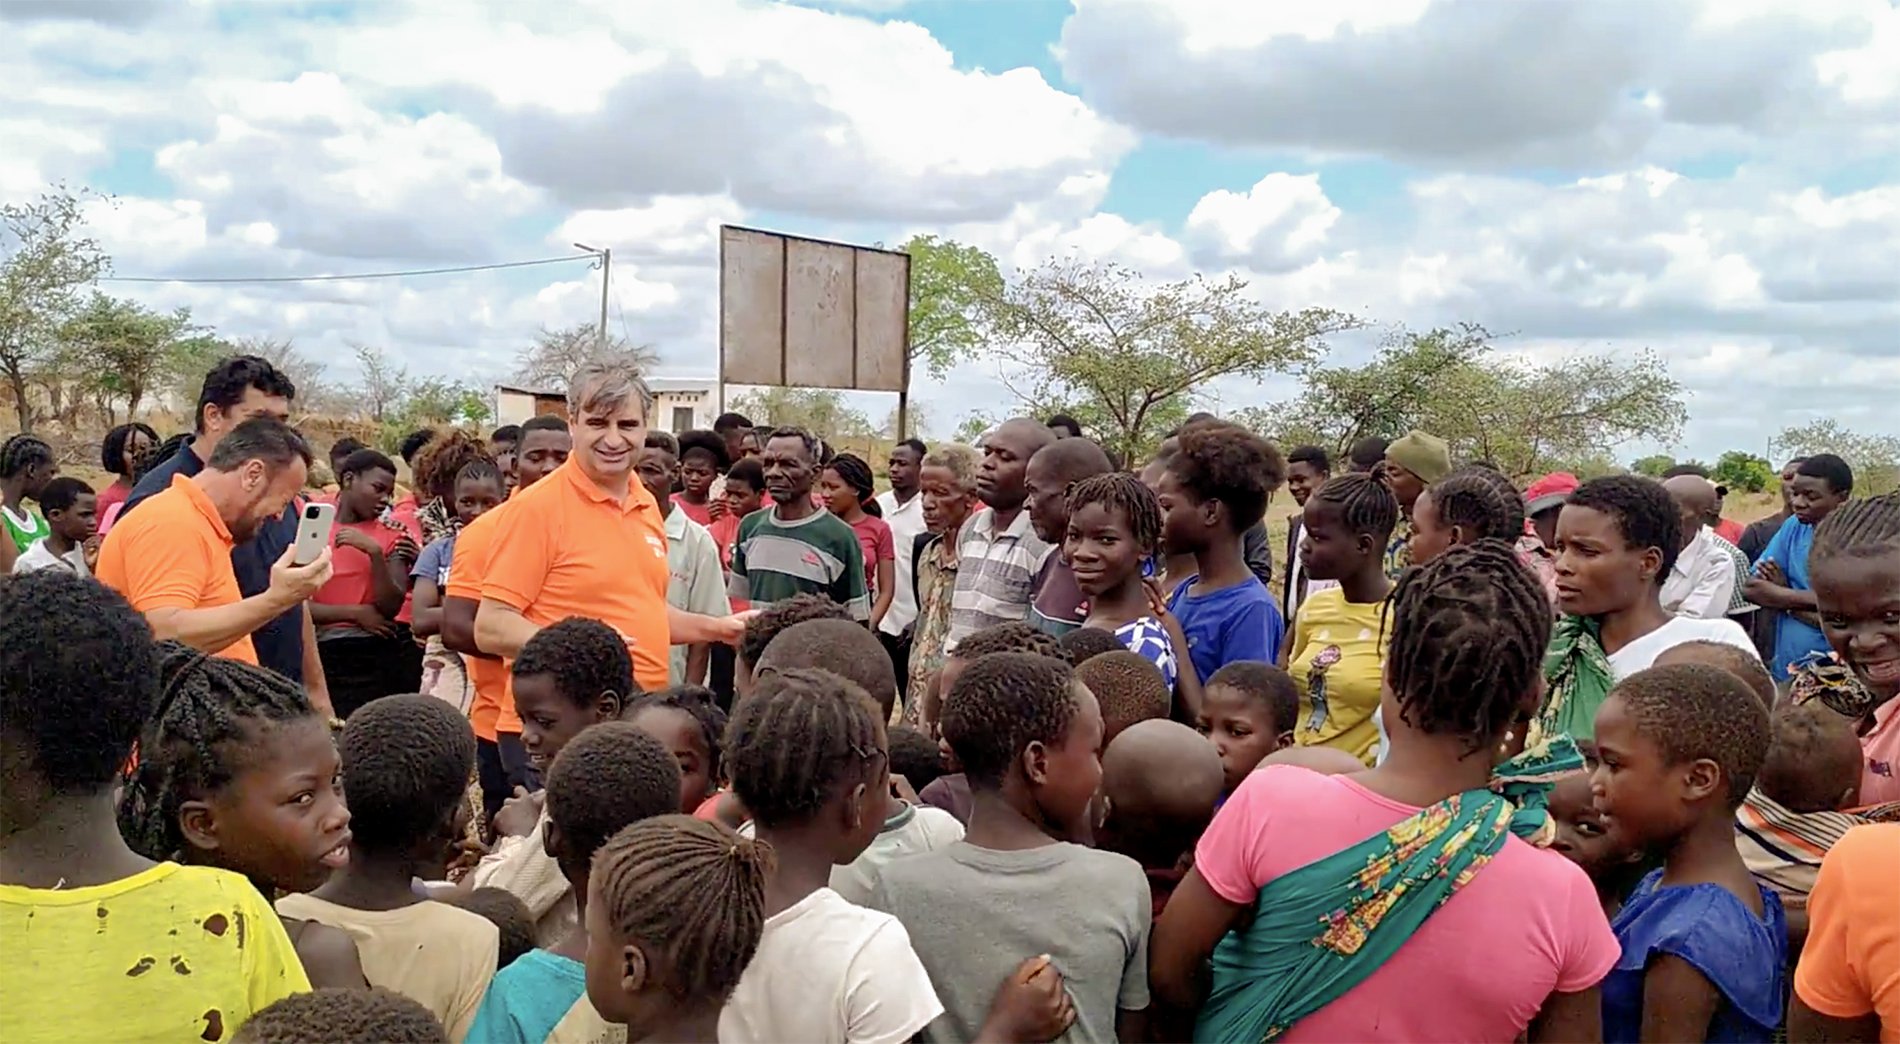 Mais de 70 crianças aceitam Jesus ao ouvir missionários na África: “Elas vieram correndo”